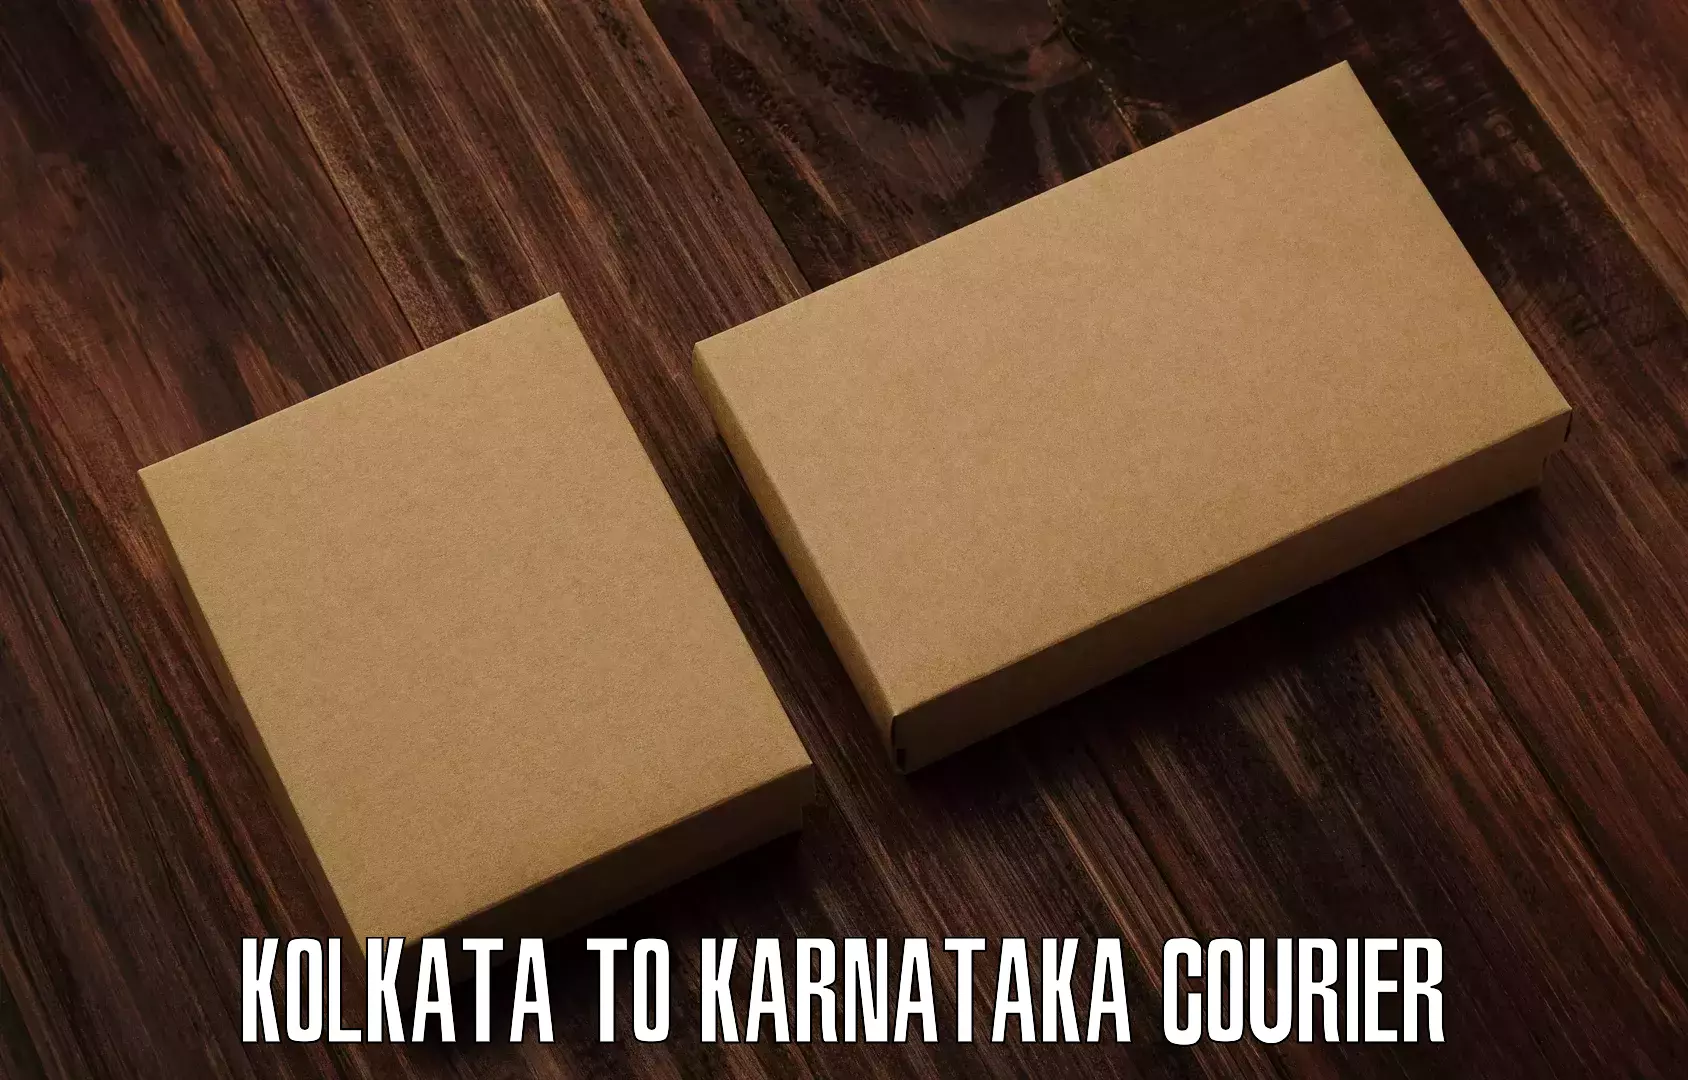 Online courier booking Kolkata to Karnataka